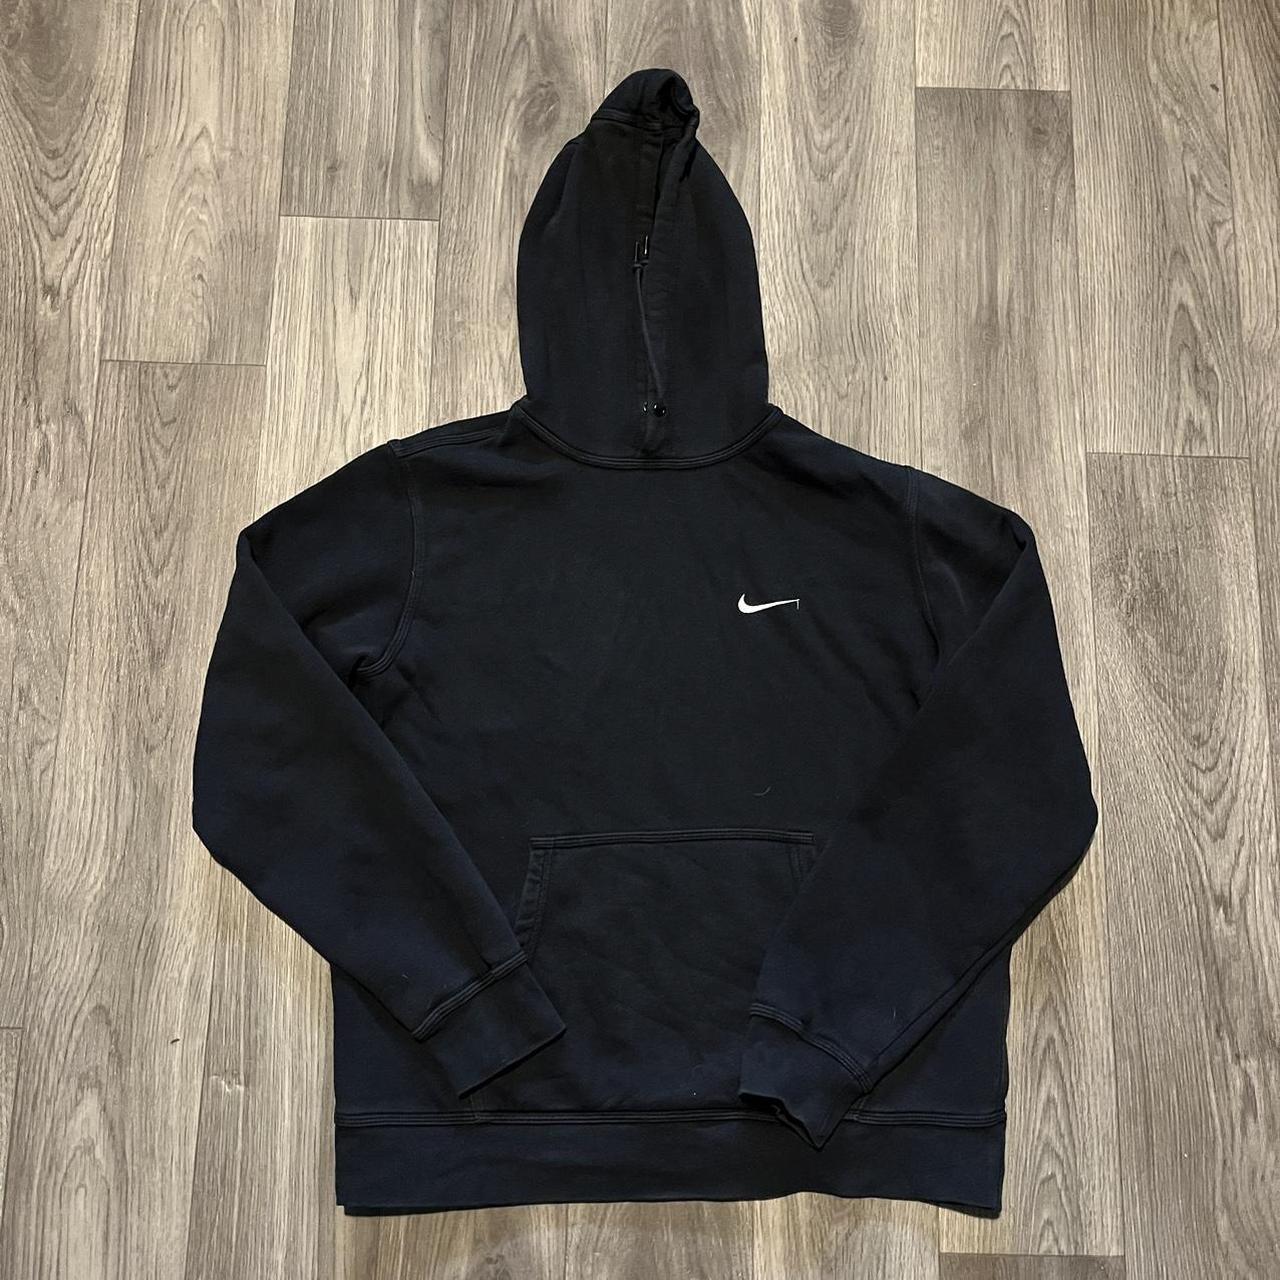 Nike hoodie Black Nike pull over hoodie, with... - Depop